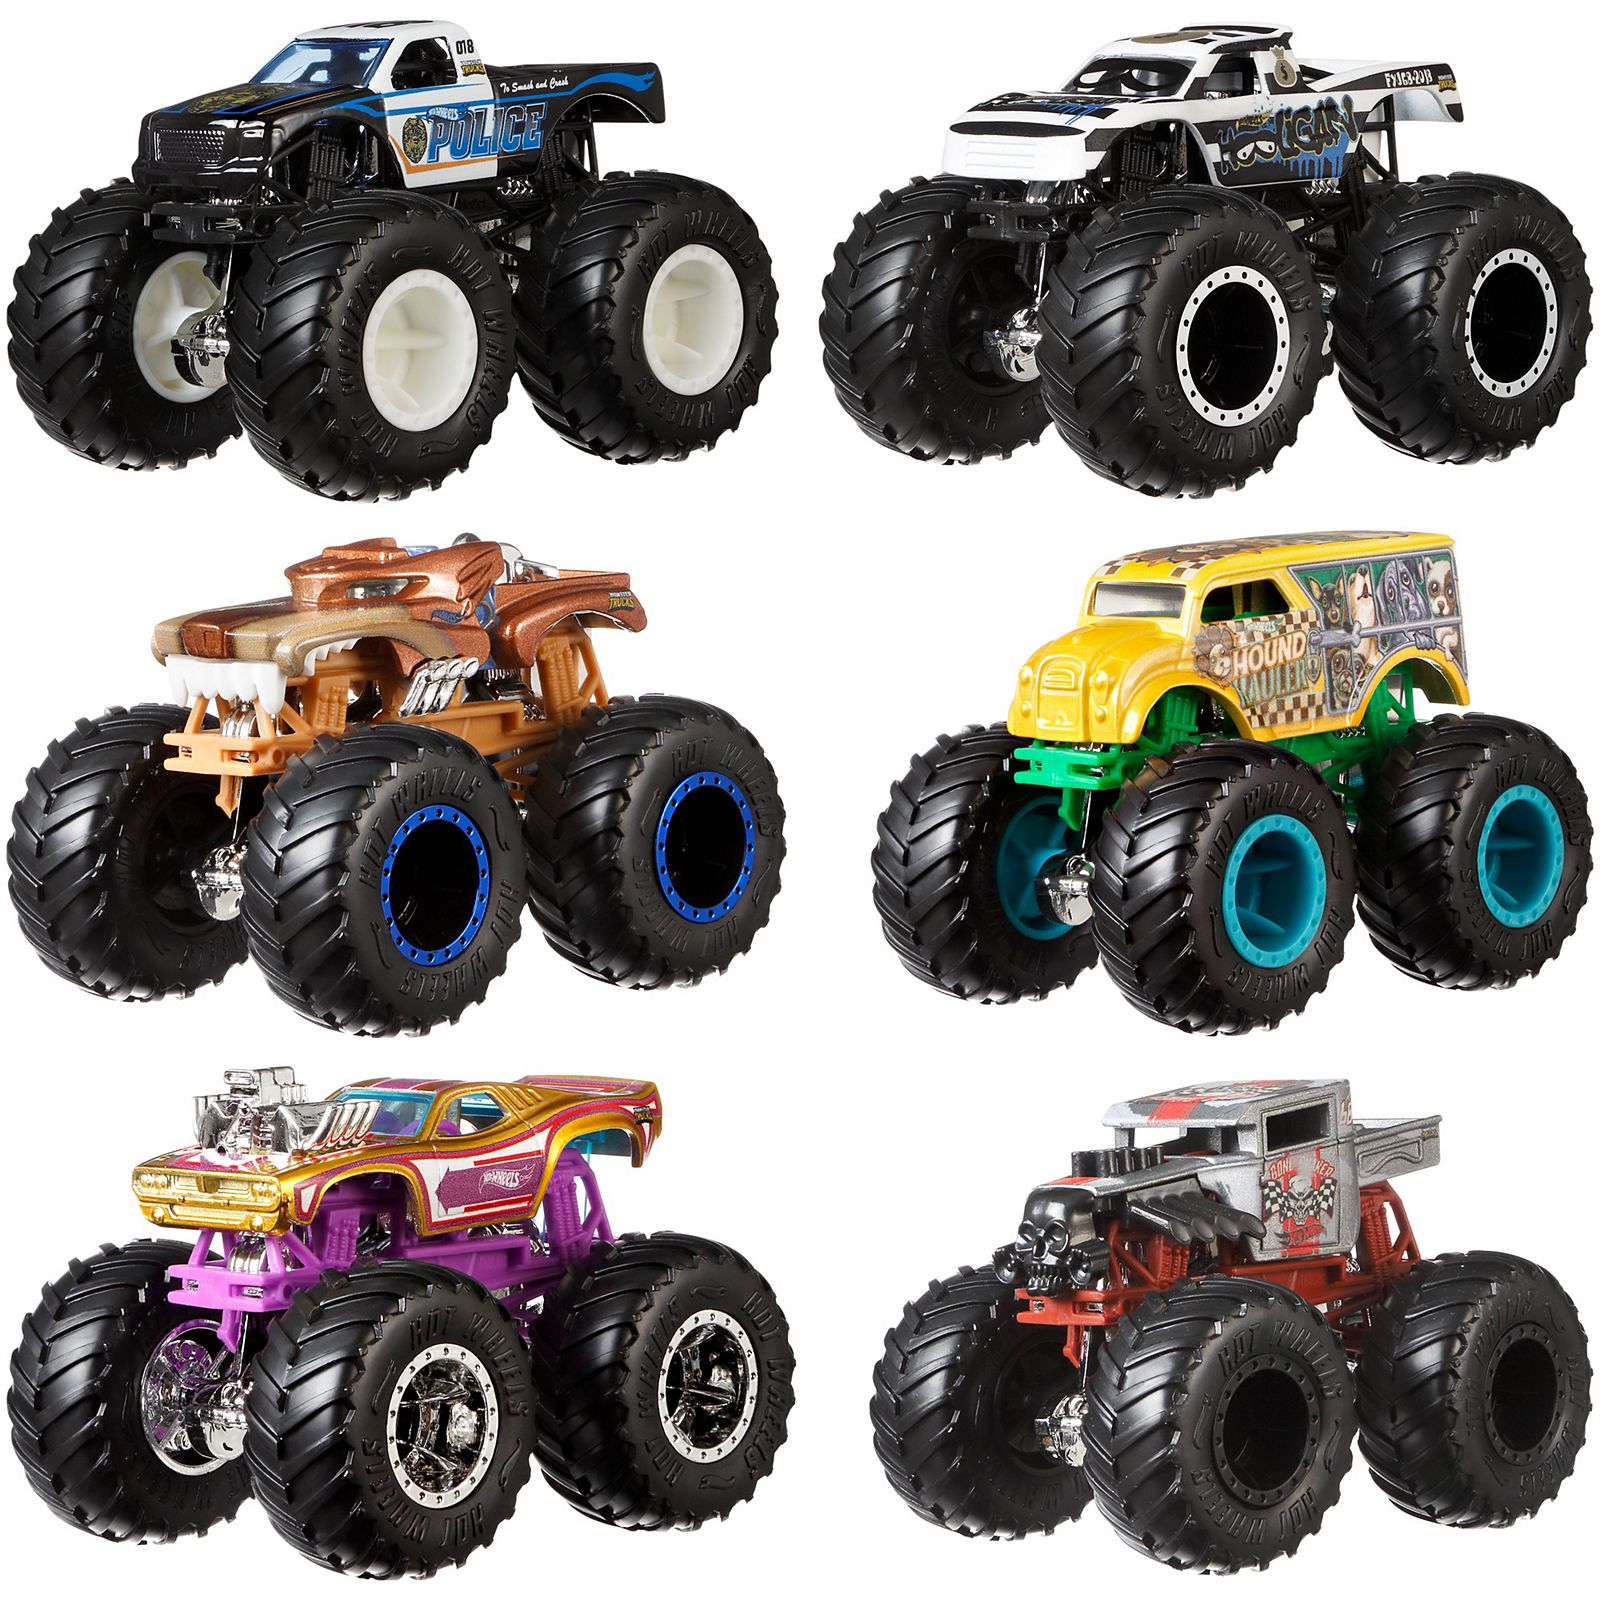 Wholesale 2pk Hot Wheels Color Reveal Toy Car MULTICOLOR